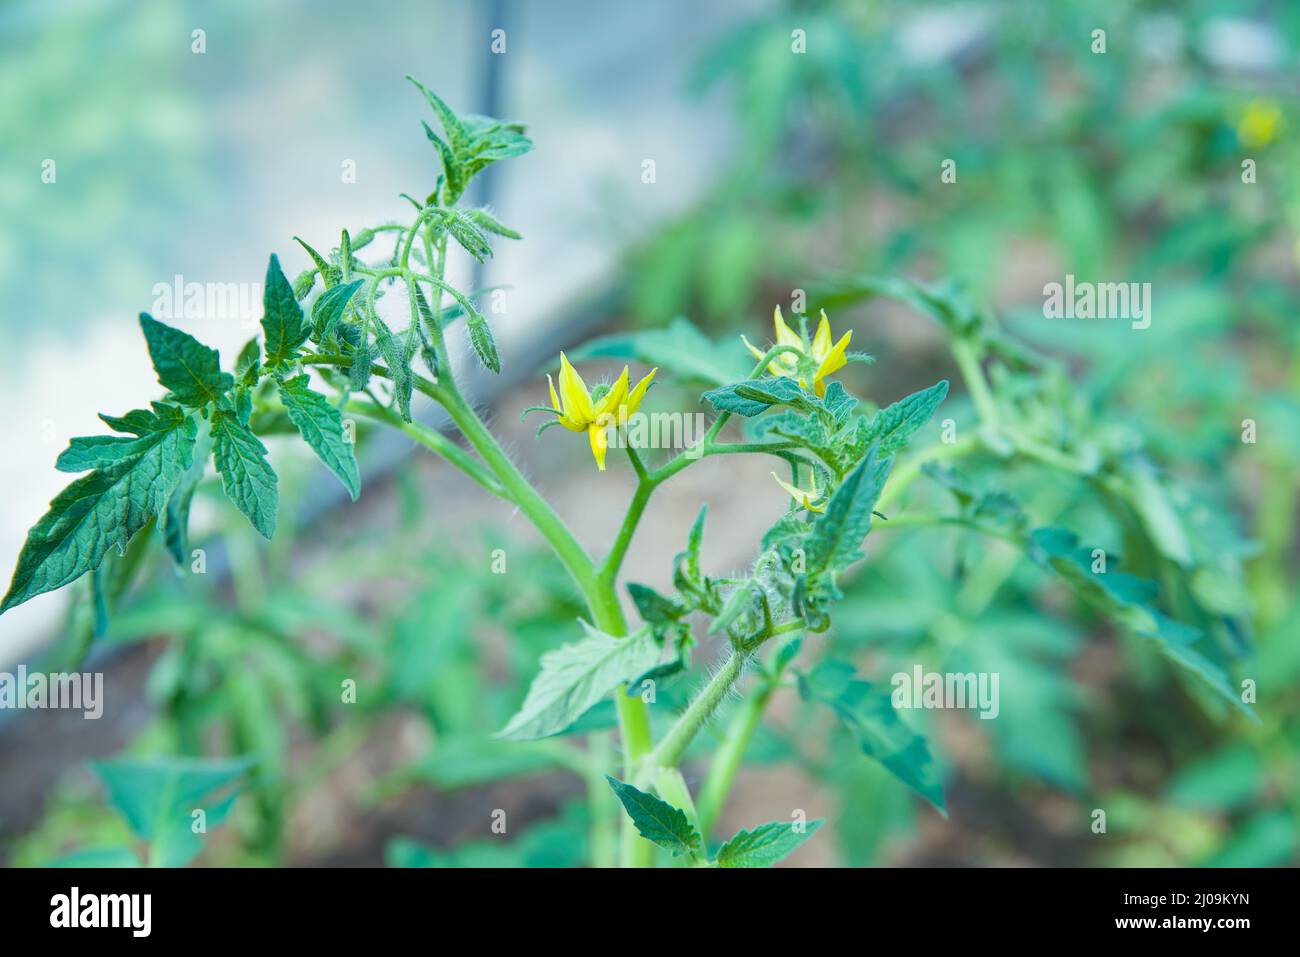 Piantine di pomodoro, piantine di pomodoro giovani piante verdi nella serra iniziano a fiorire Foto Stock